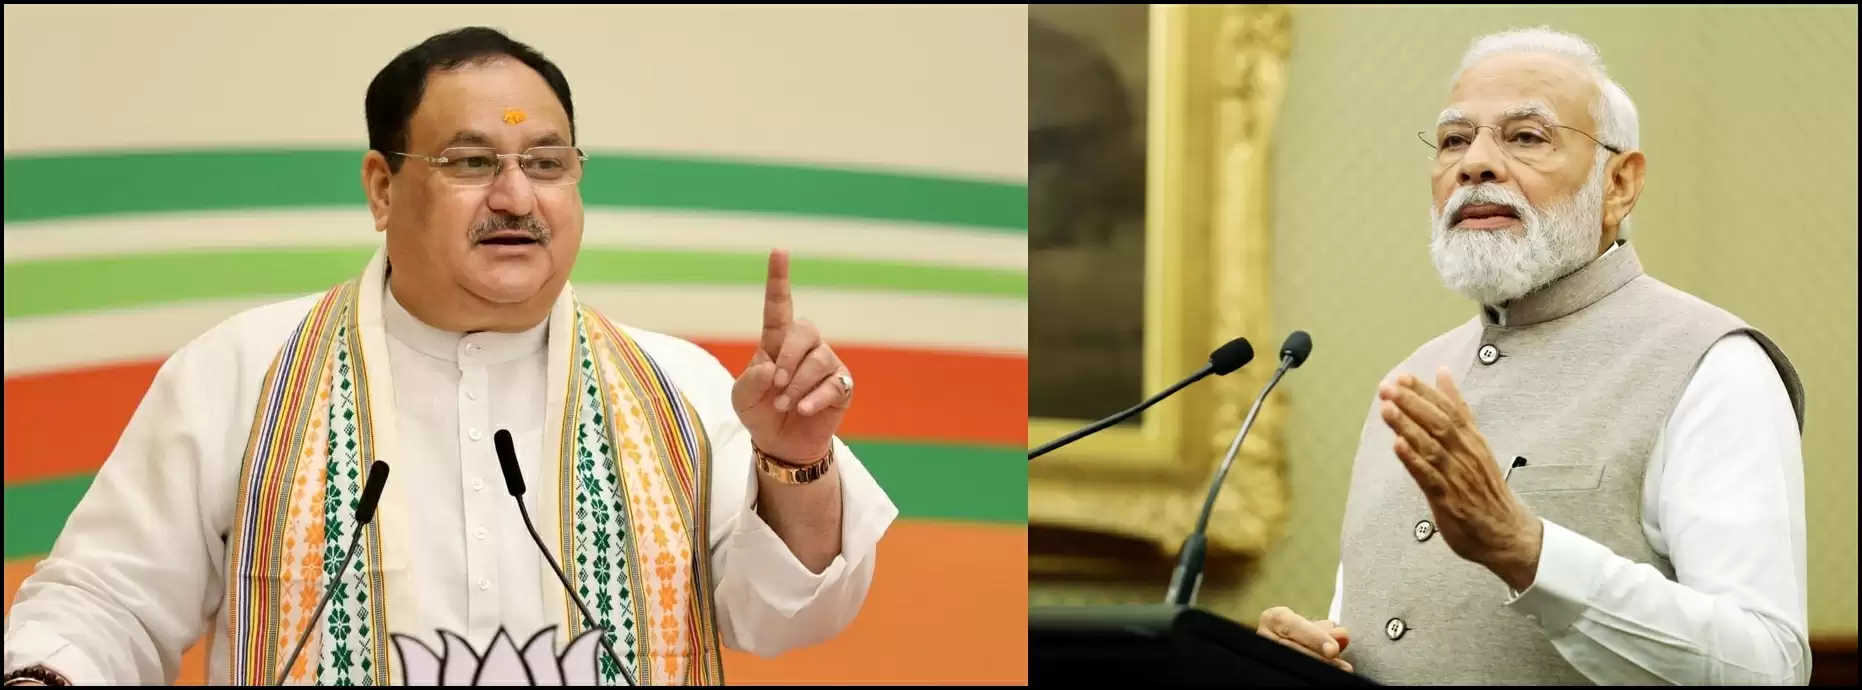 विदेश यात्रा से लौटे पीएम मोदी, भाजपा अध्यक्ष नड्डा व पार्टी कार्यकर्ताओं ने किया स्वागत